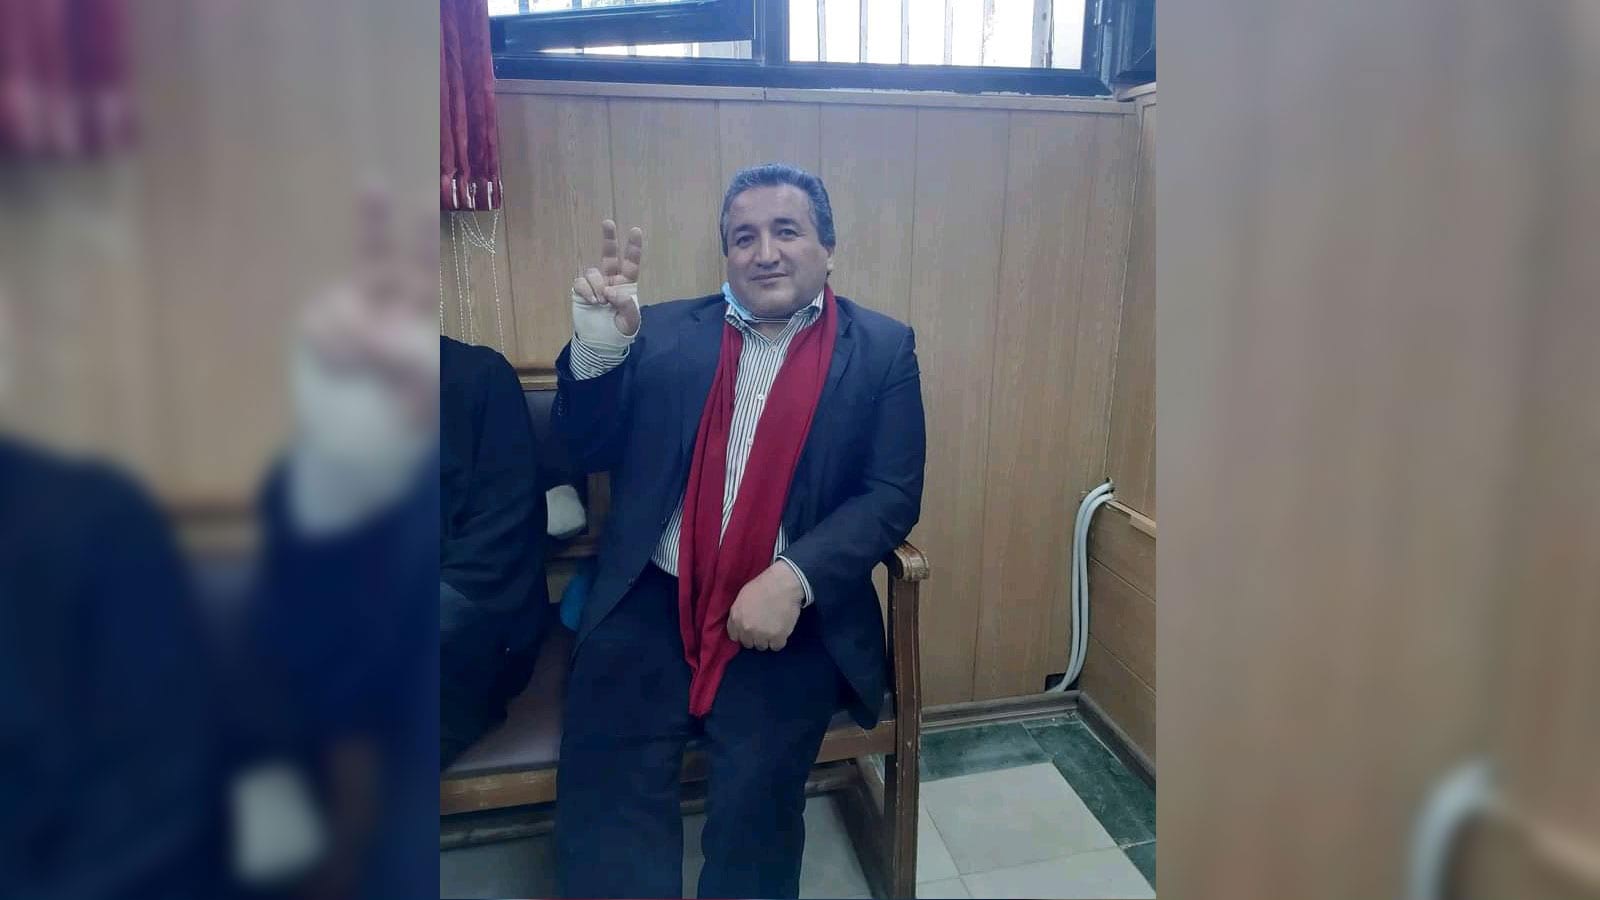 القضاء الجزائري يودع الناشط الحقوقي حسن بوراس السجن دون سبب!